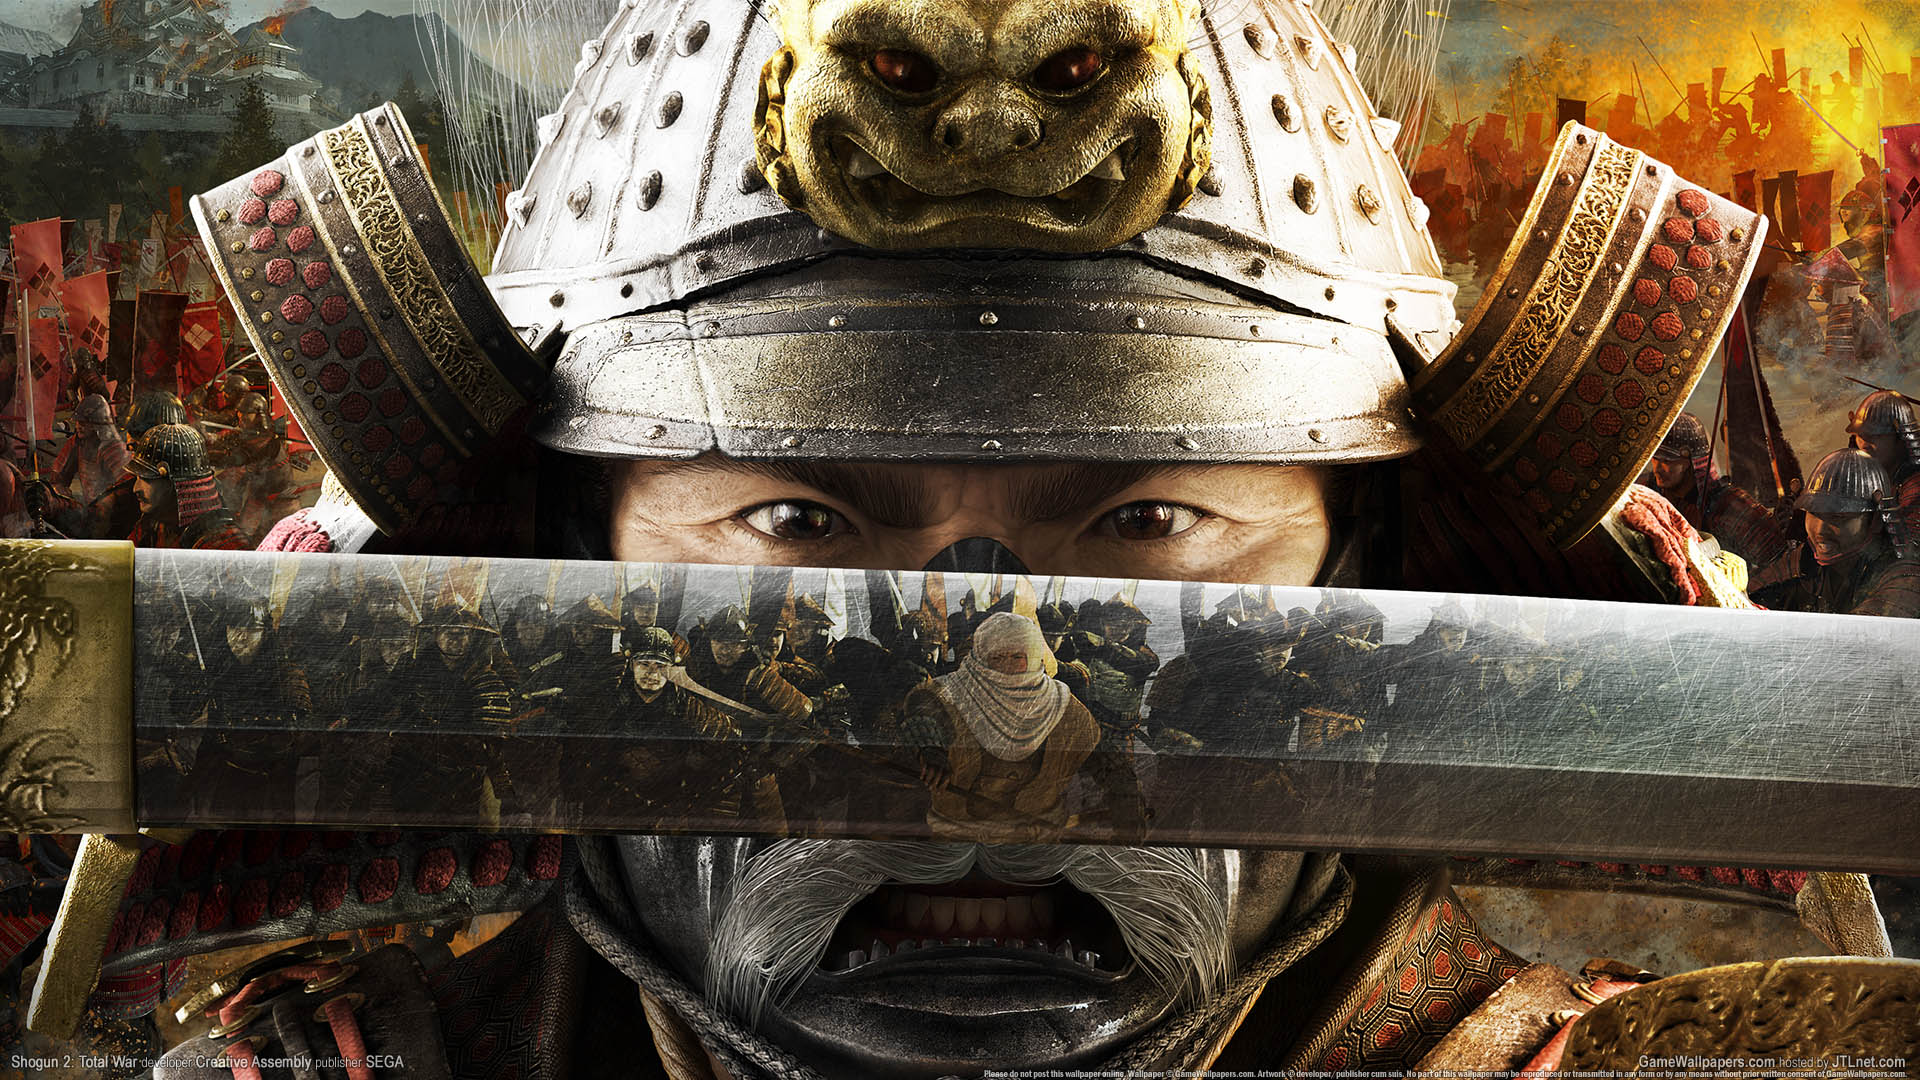 Shogun 2: Total War fond d'cran 02 1920x1080